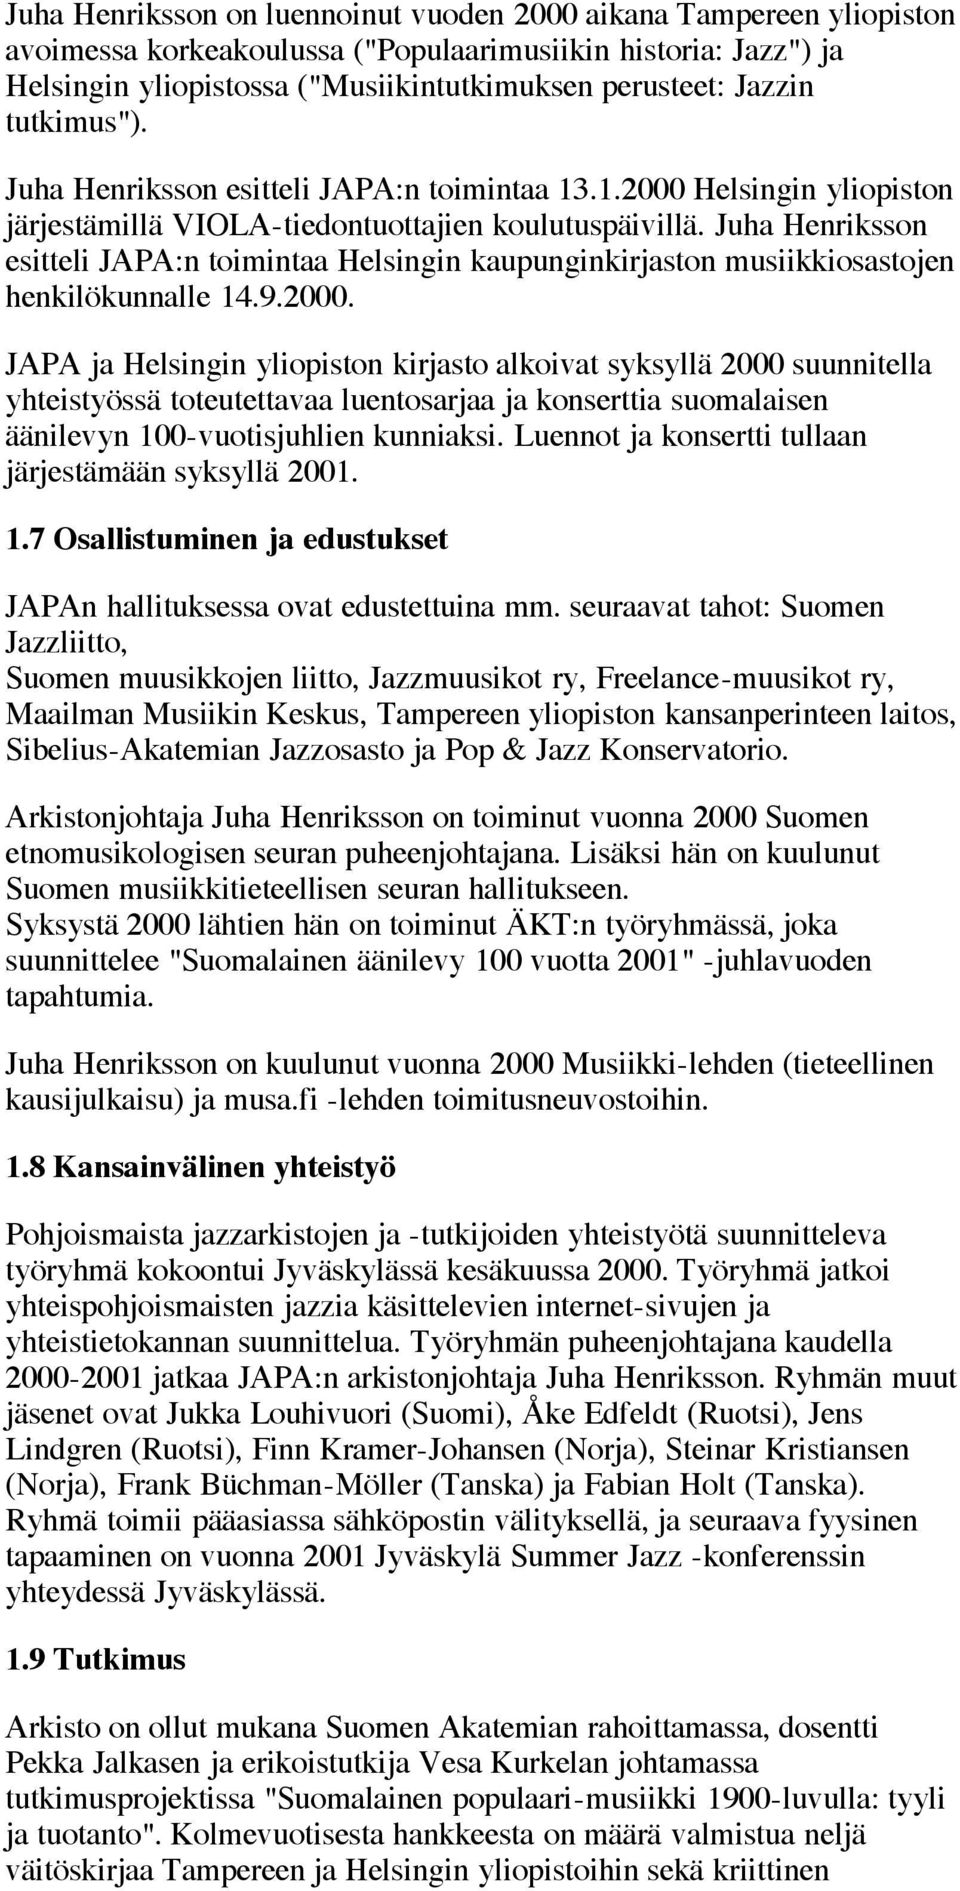 Juha Henriksson esitteli JAPA:n toimintaa Helsingin kaupunginkirjaston musiikkiosastojen henkilökunnalle 14.9.2000.